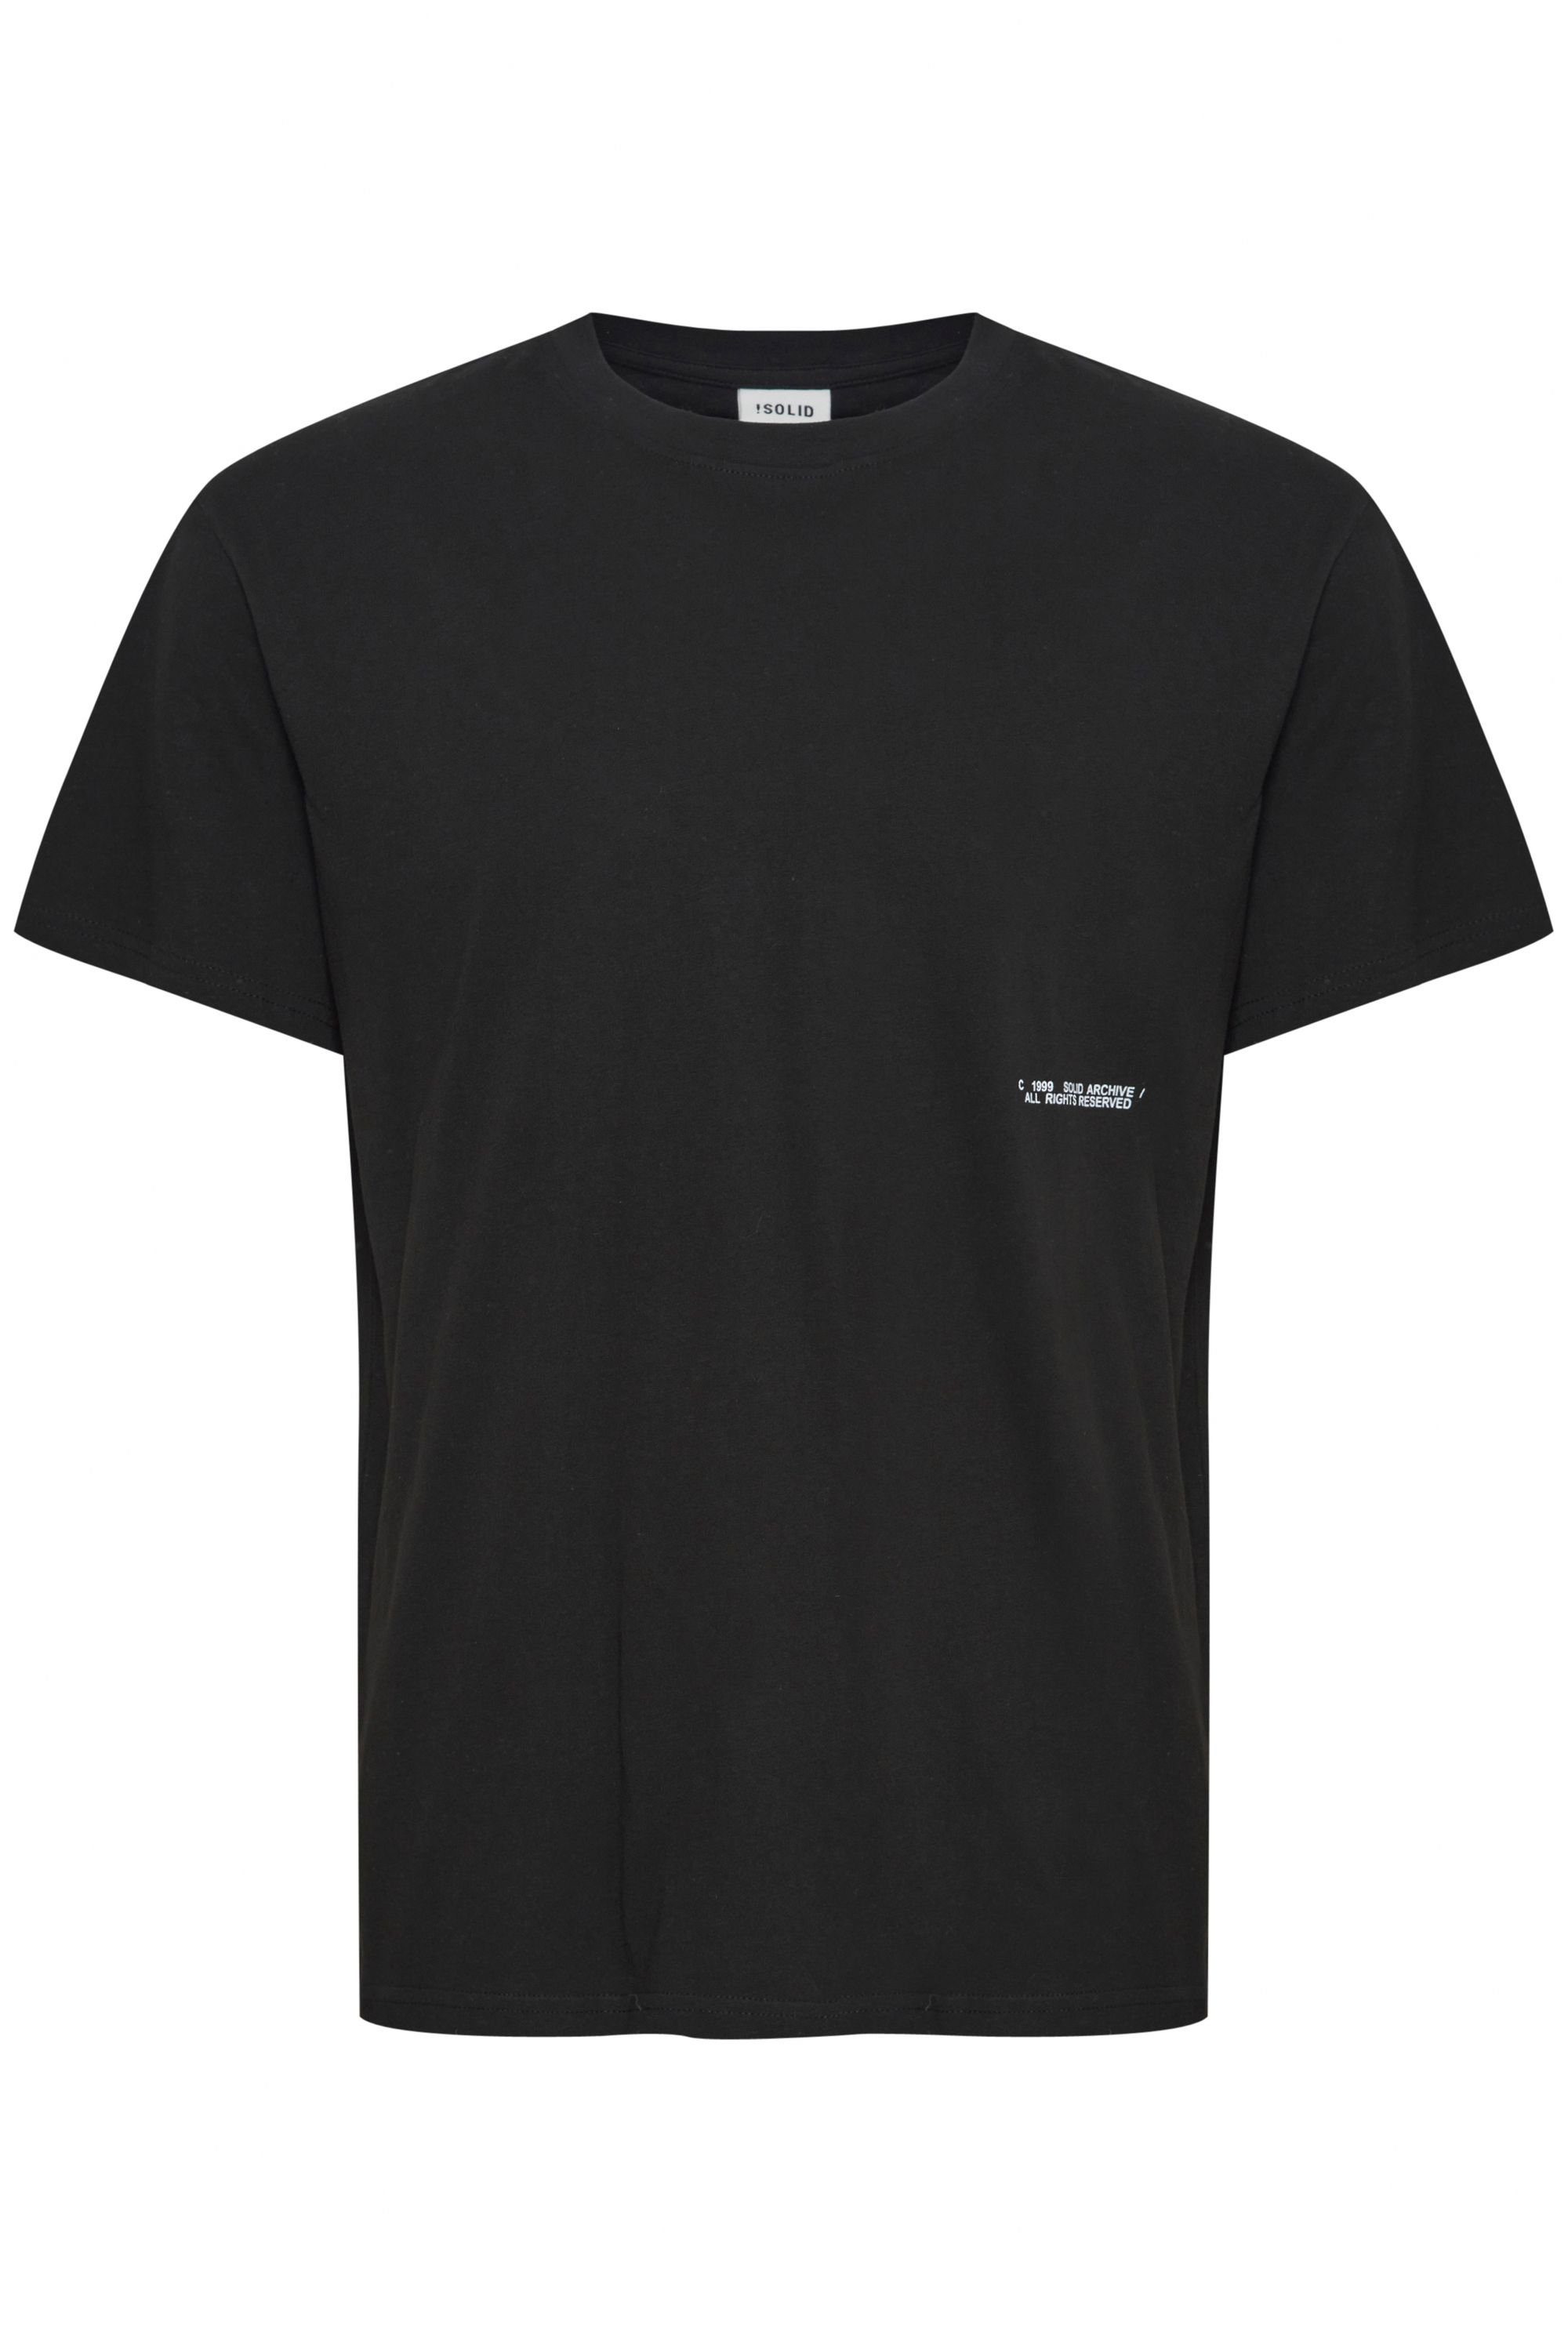 SDGen (194008) Black - True !Solid T-Shirt 21107870